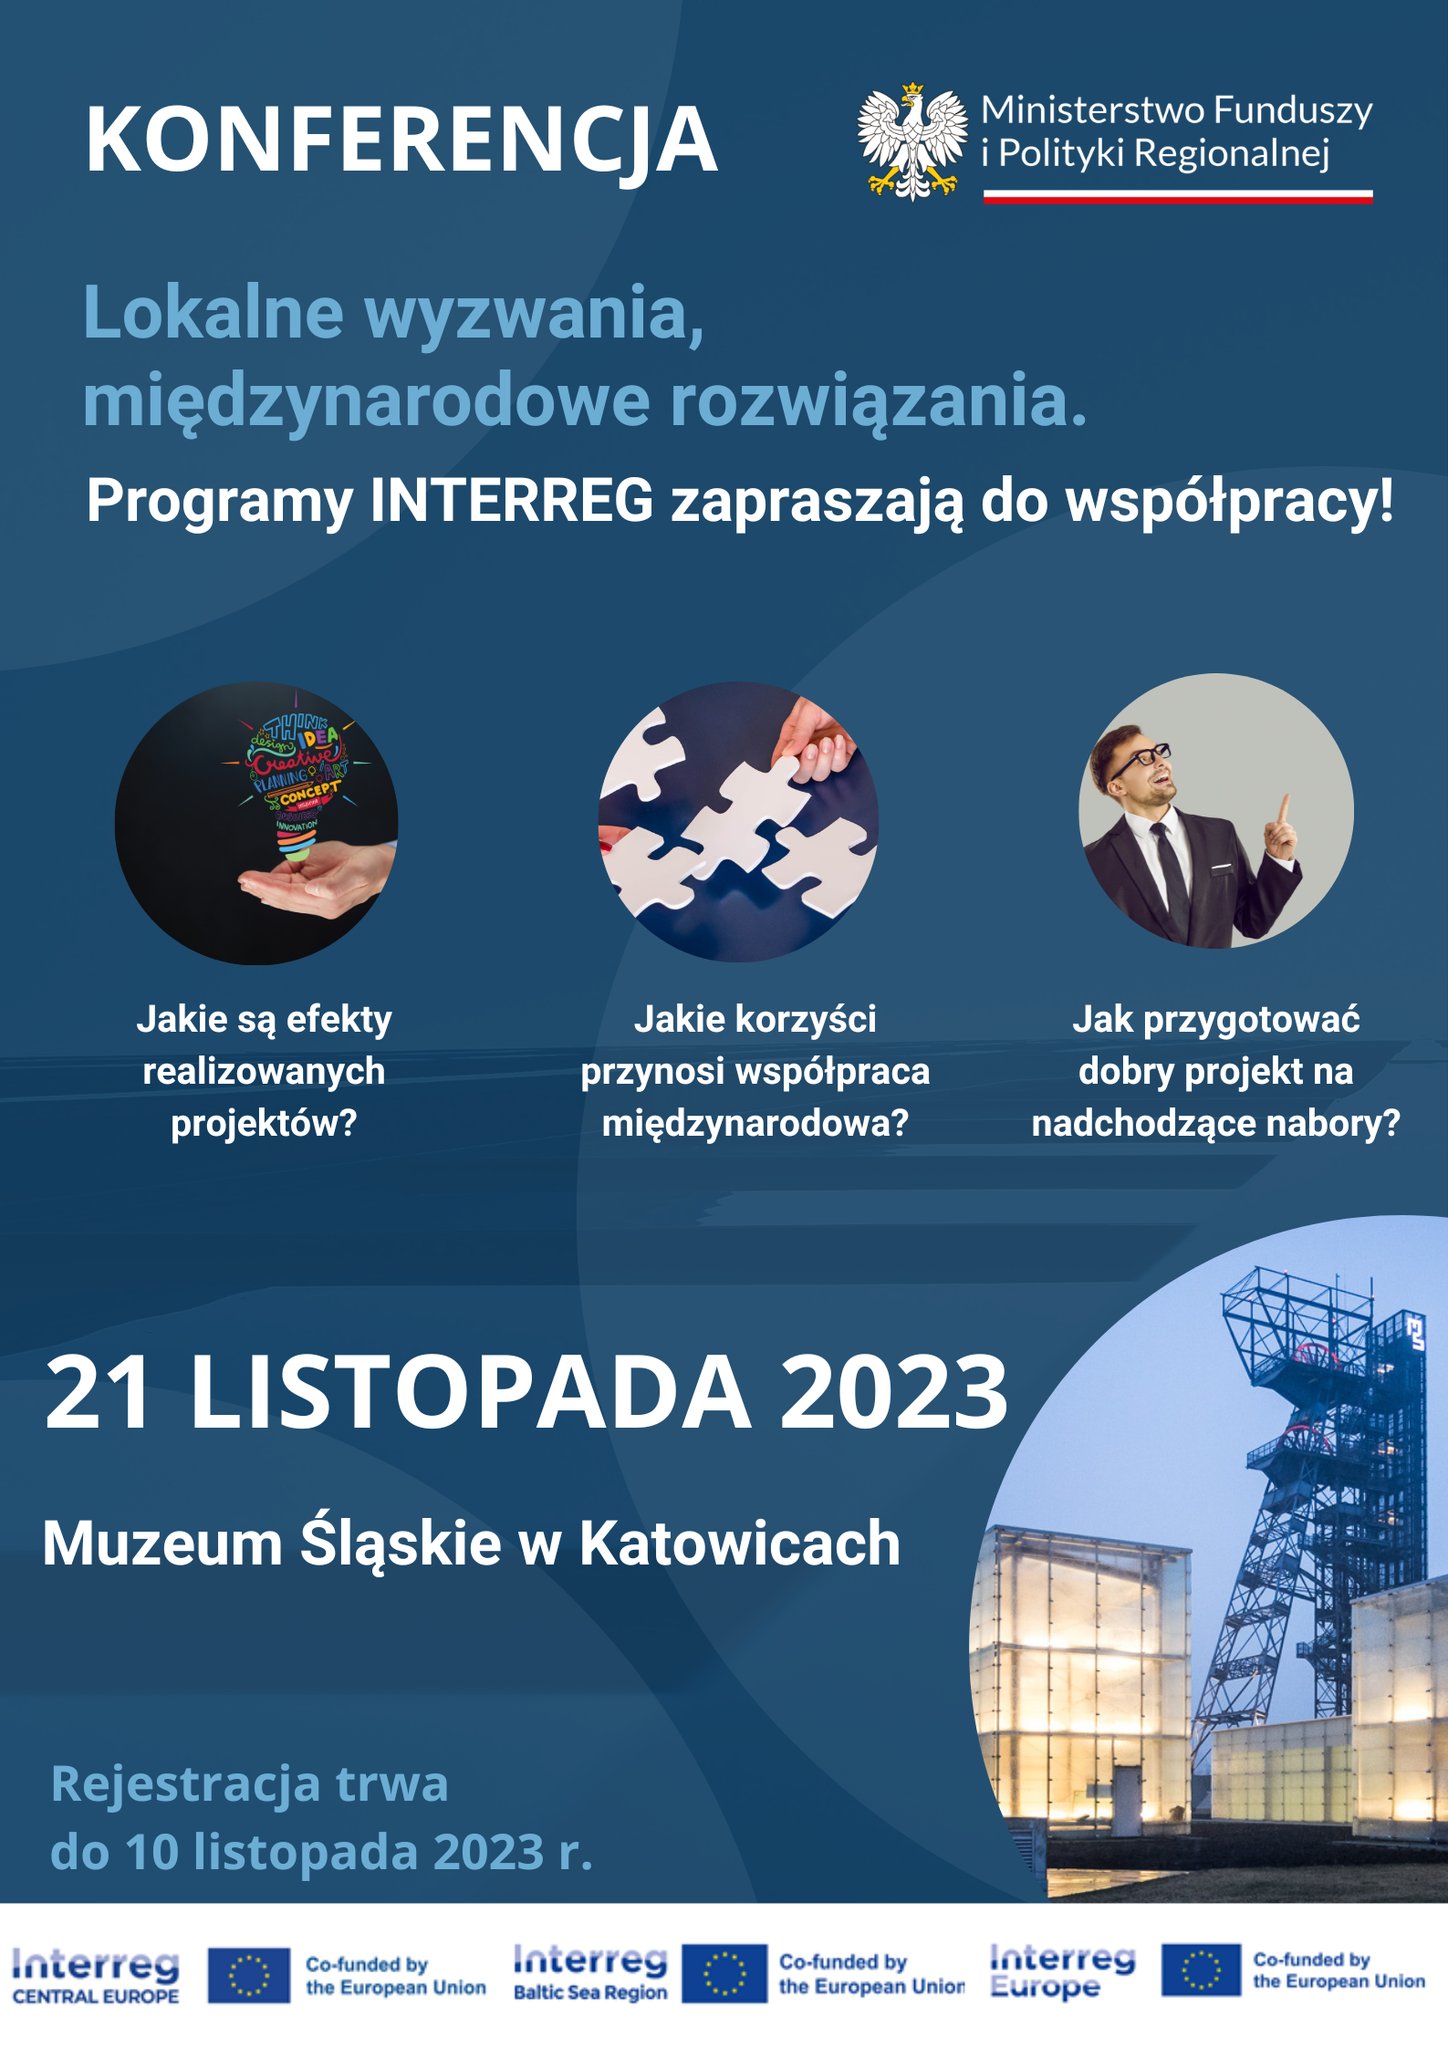 Konferencja w Katowicach dnia 21 listopada 2023